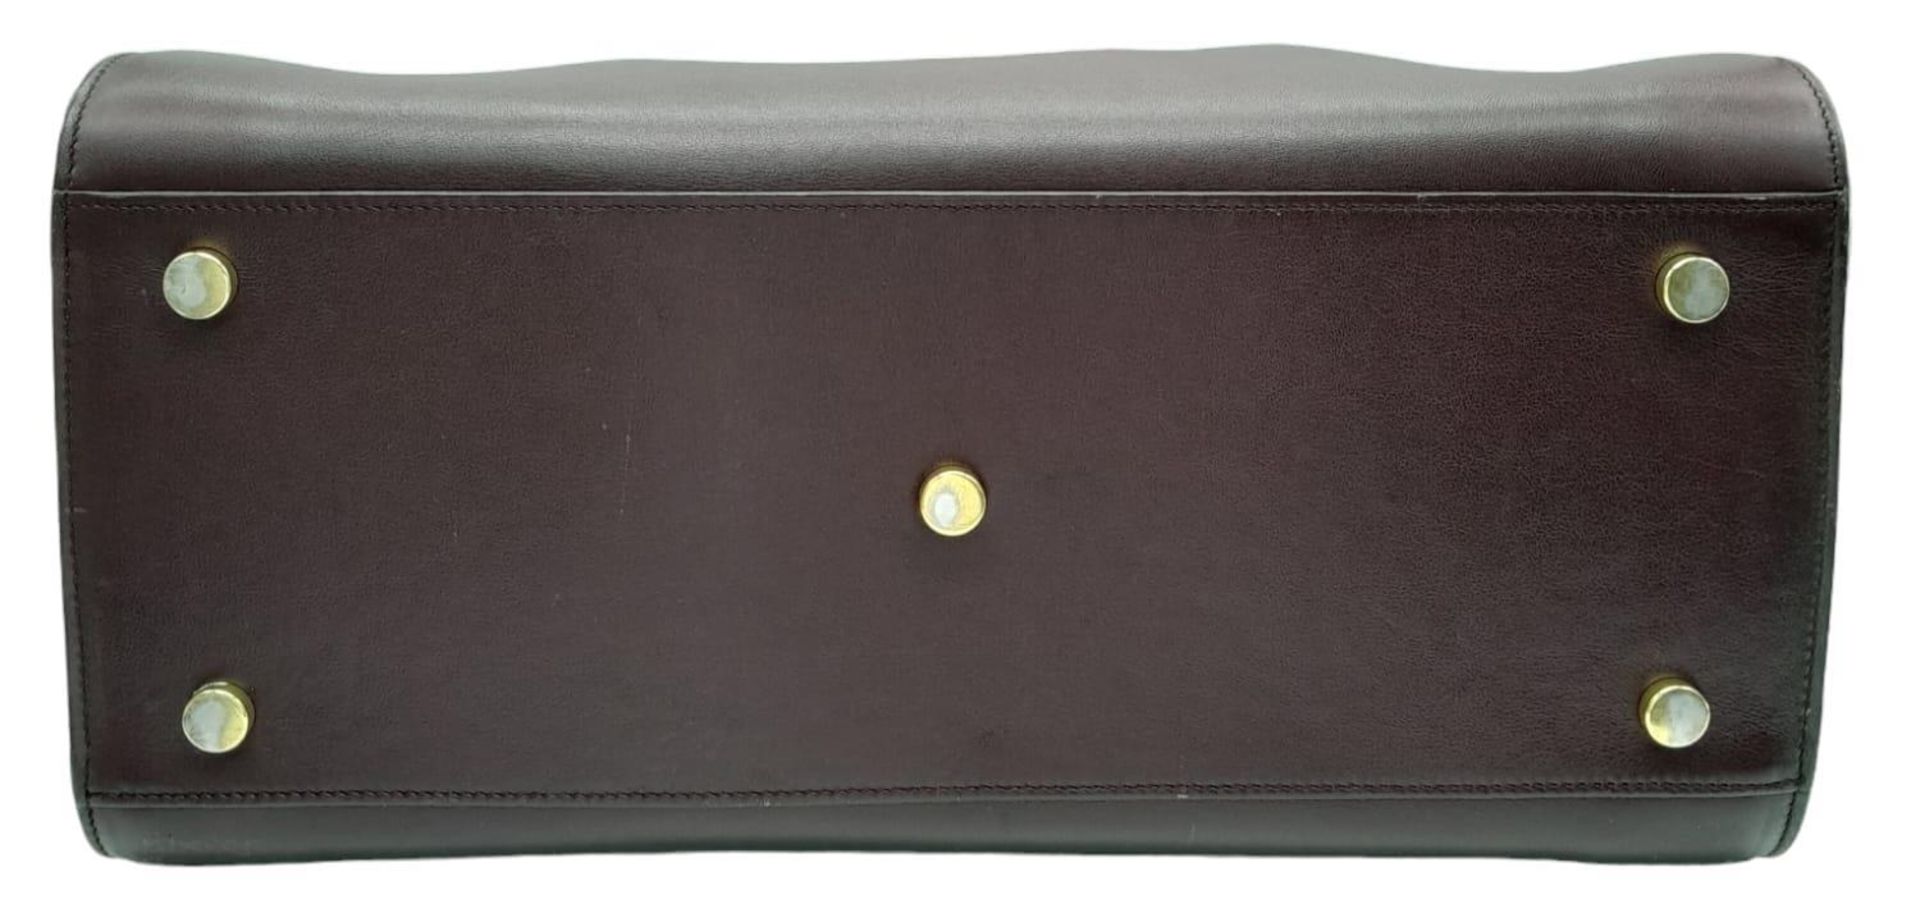 A Saint Laurent Sac De Jour Burgundy Handbag. Leather Exterior, Gold Tone Hardware, Double Handle in - Bild 4 aus 9